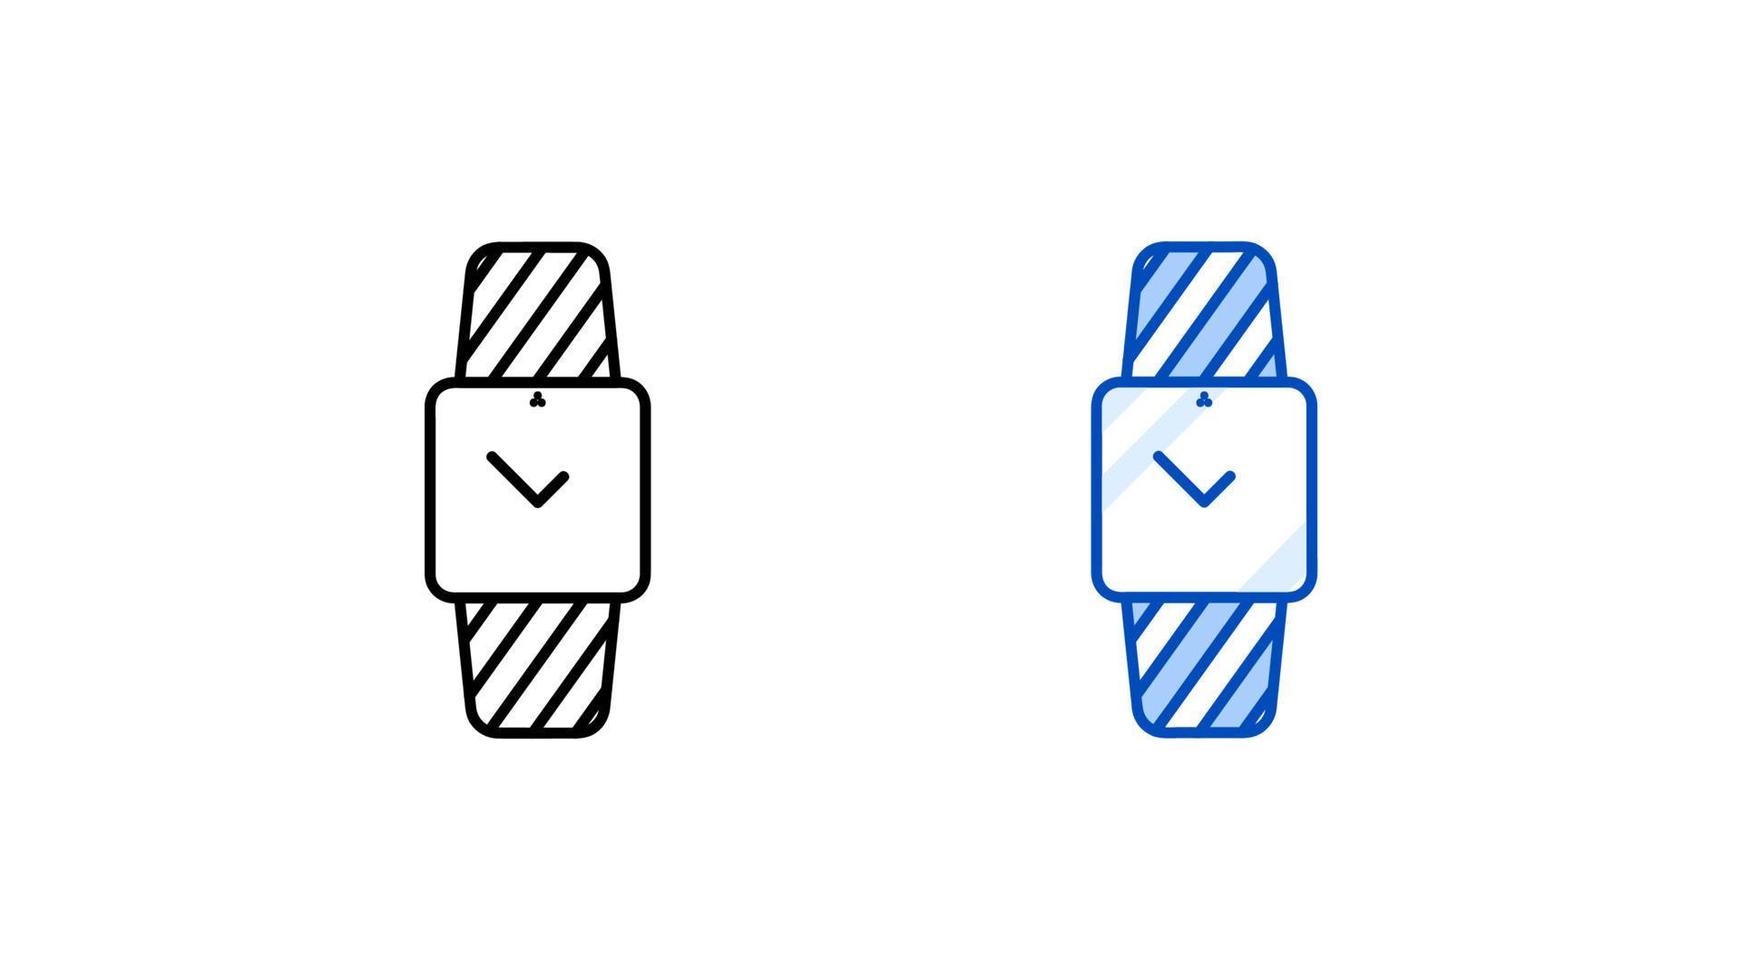 jeu d'icônes de montre intelligente moderne. horloge moderne à affichage carré simple. modèle prêt d'icône linéaire et coloré. télécharger le vecteur d'écran tactile d'appareil intelligent linéaire simple. fond blanc.